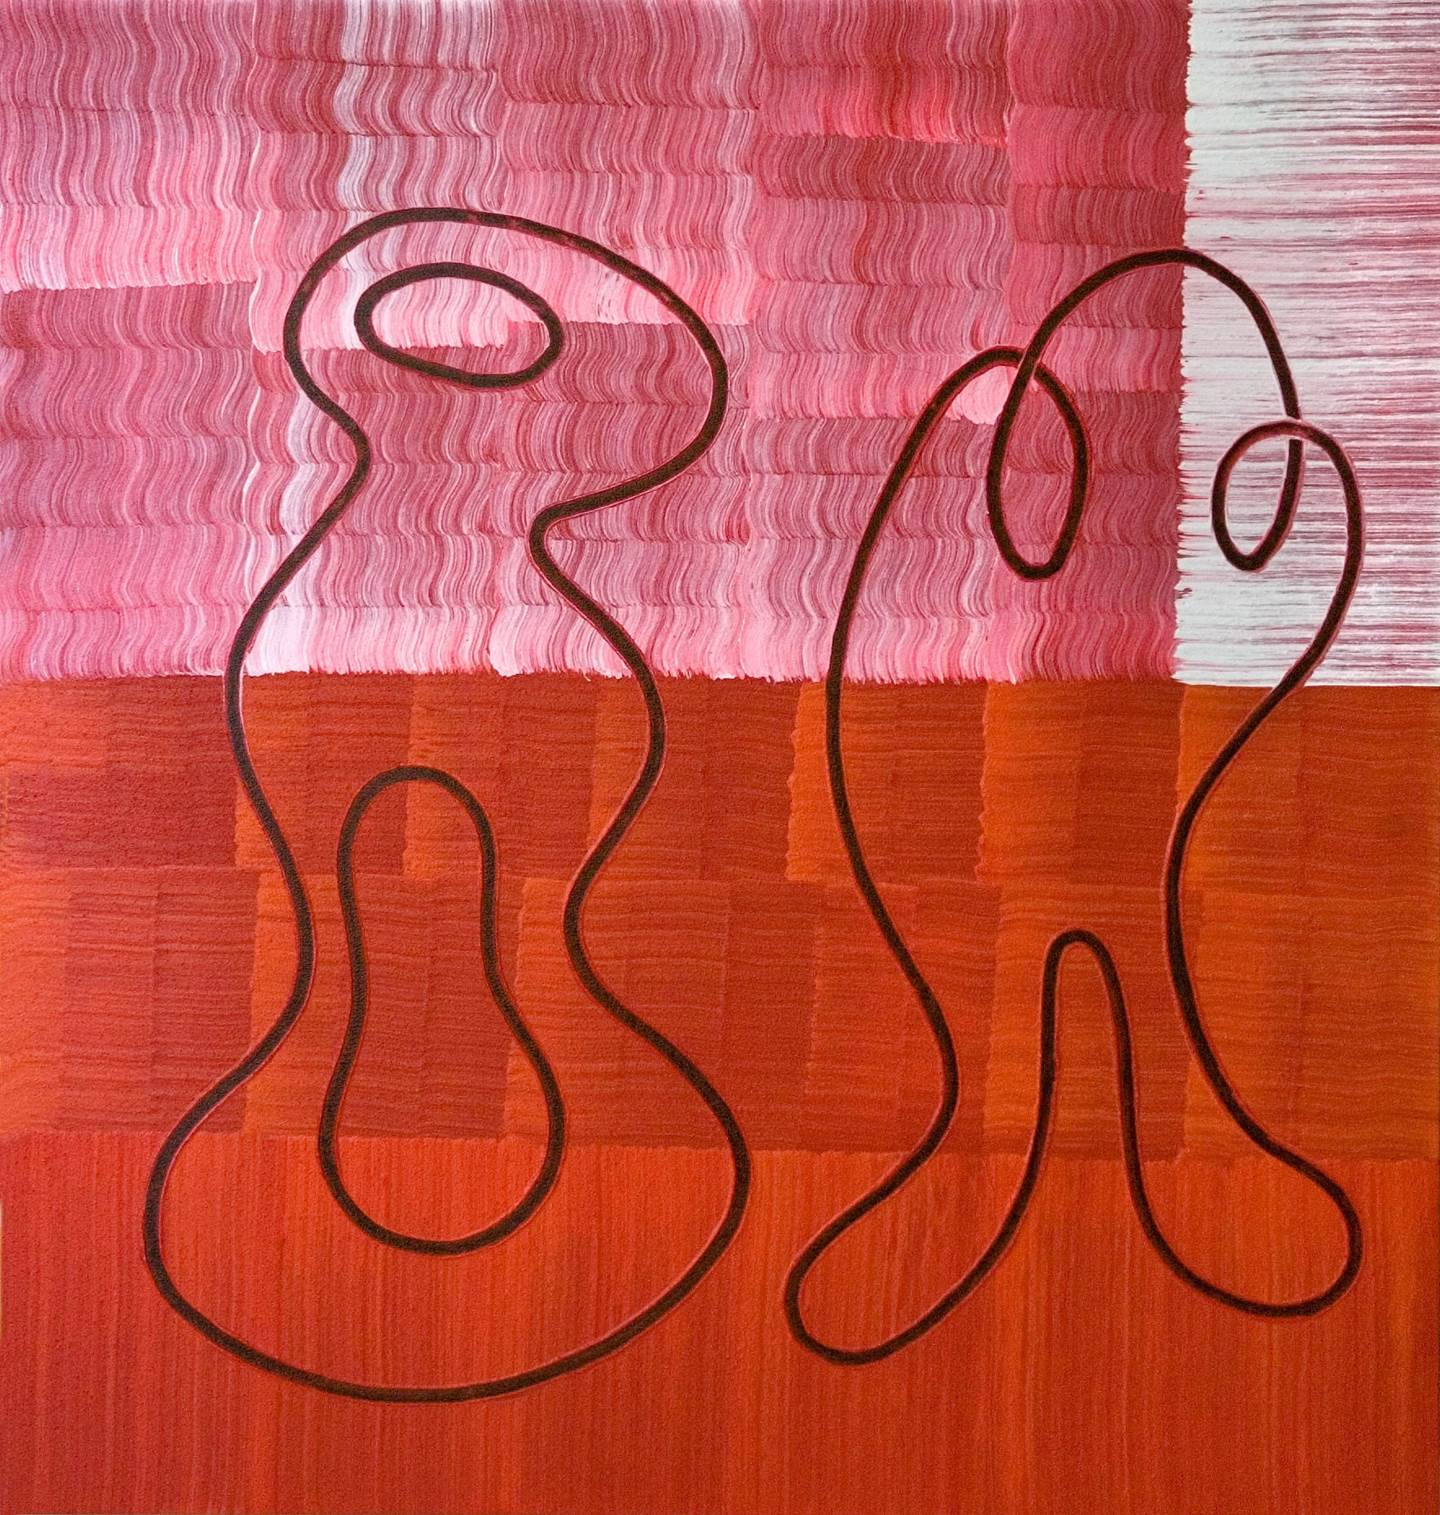 Comunicación dual , original Abstract Mixed Technique Painting by Edmundo Paz